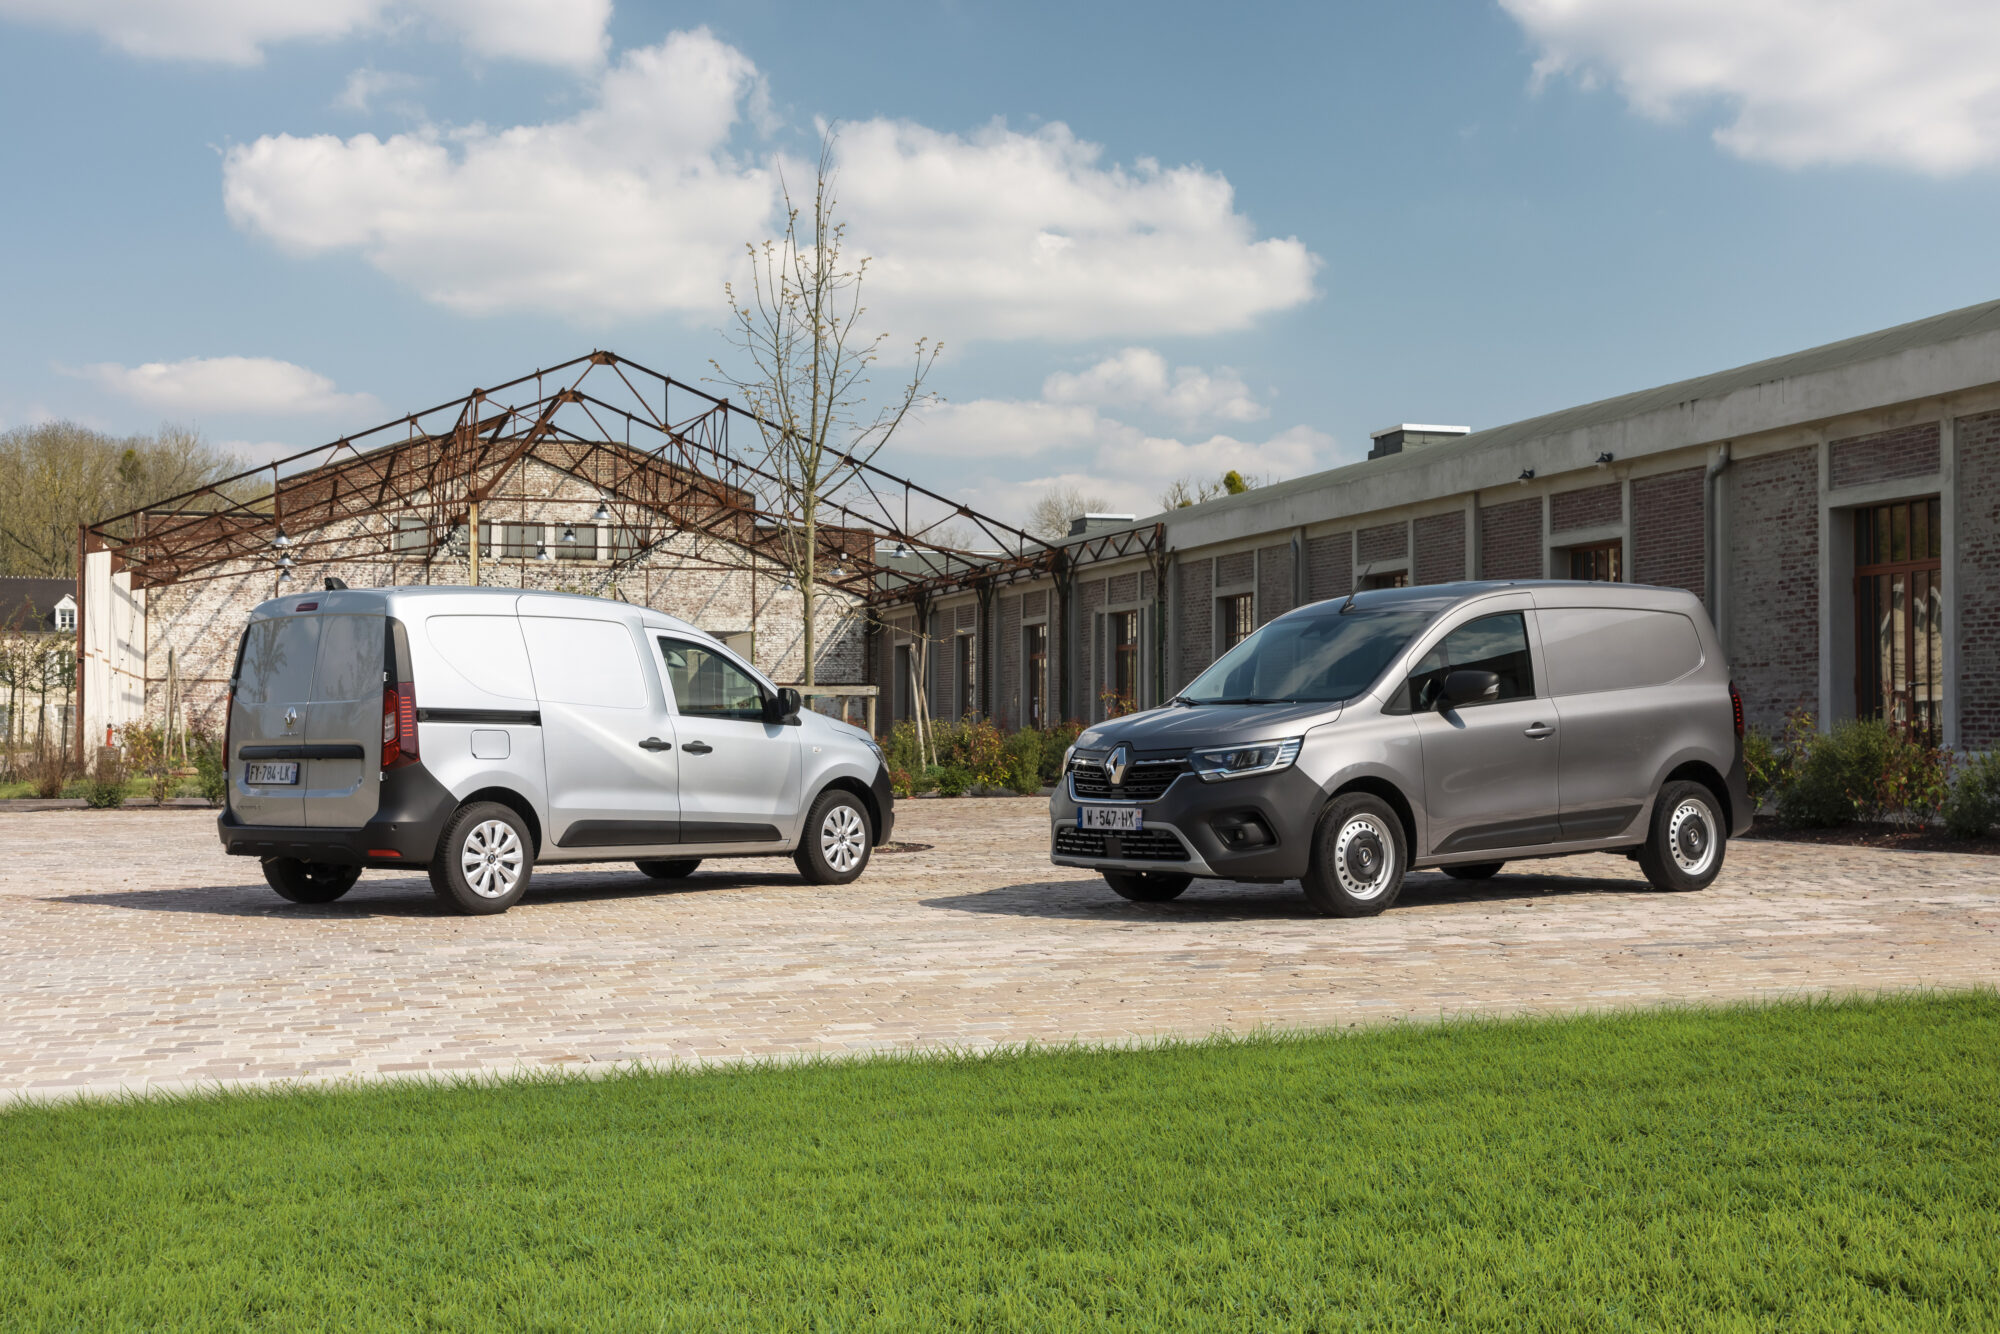 2021 - Nouveau Renault Kangoo Van et Nouveau Renault Express Van - Essais presse